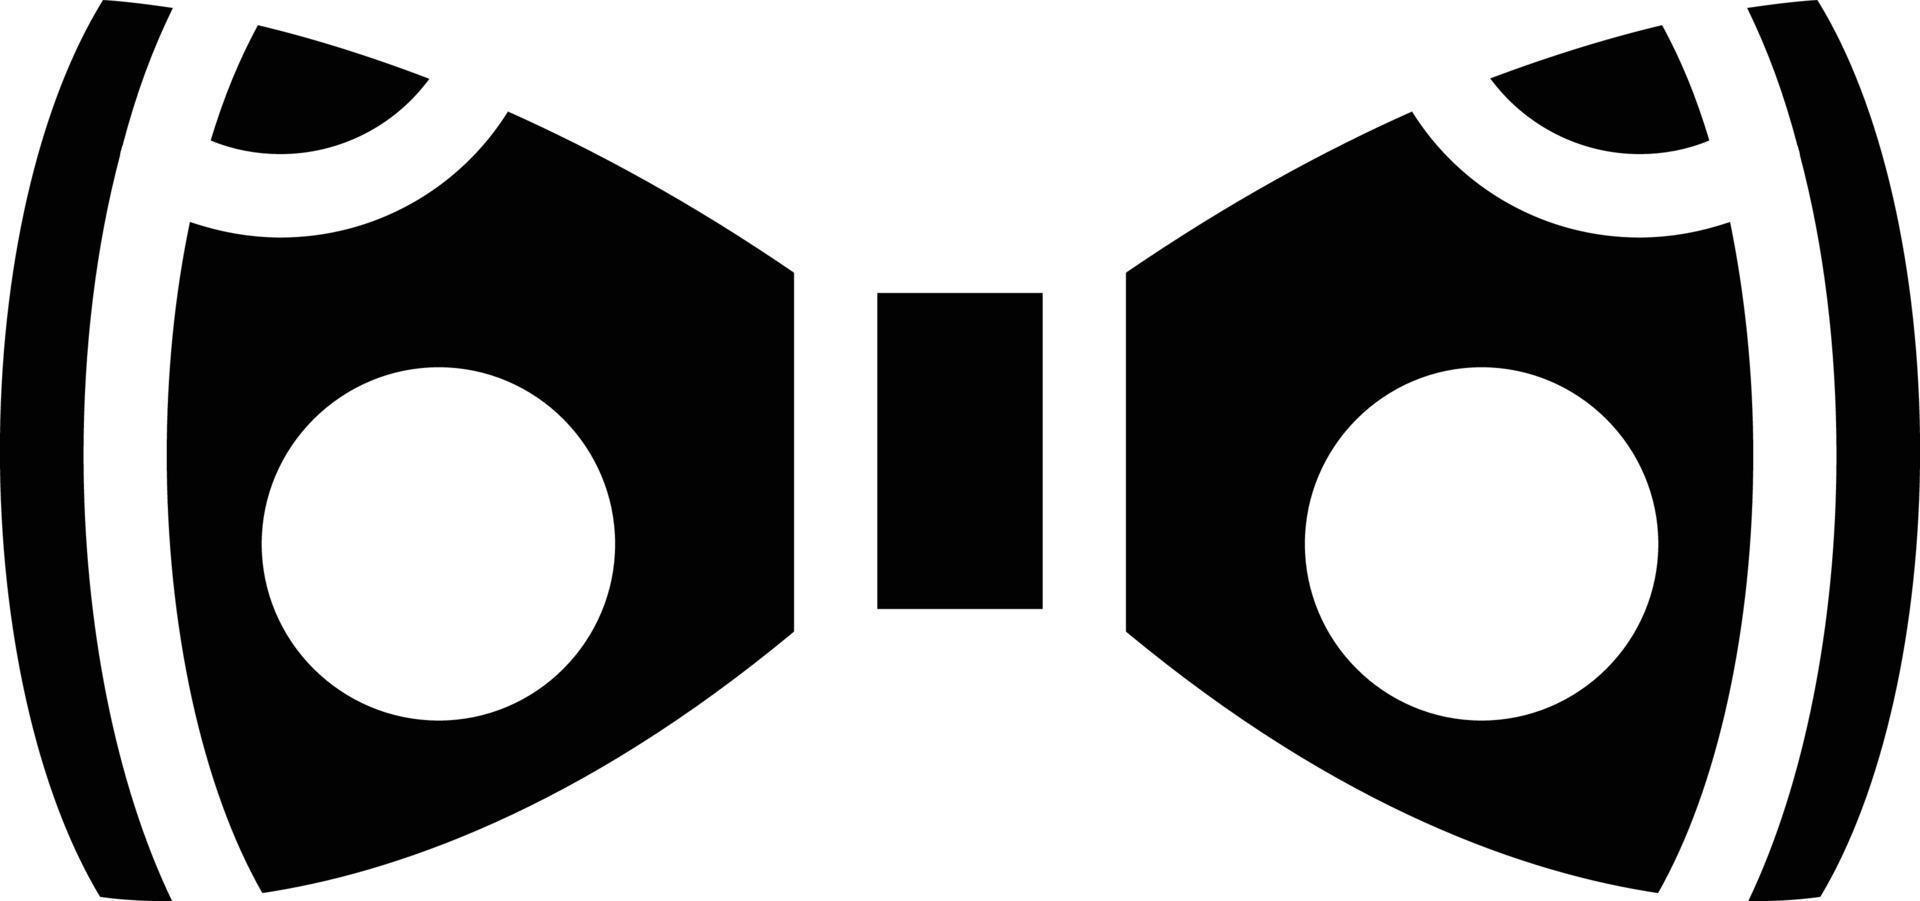 cravate illustration vectorielle sur un arrière-plan. symboles de qualité supérieure. icônes vectorielles pour le concept ou la conception graphique. vecteur